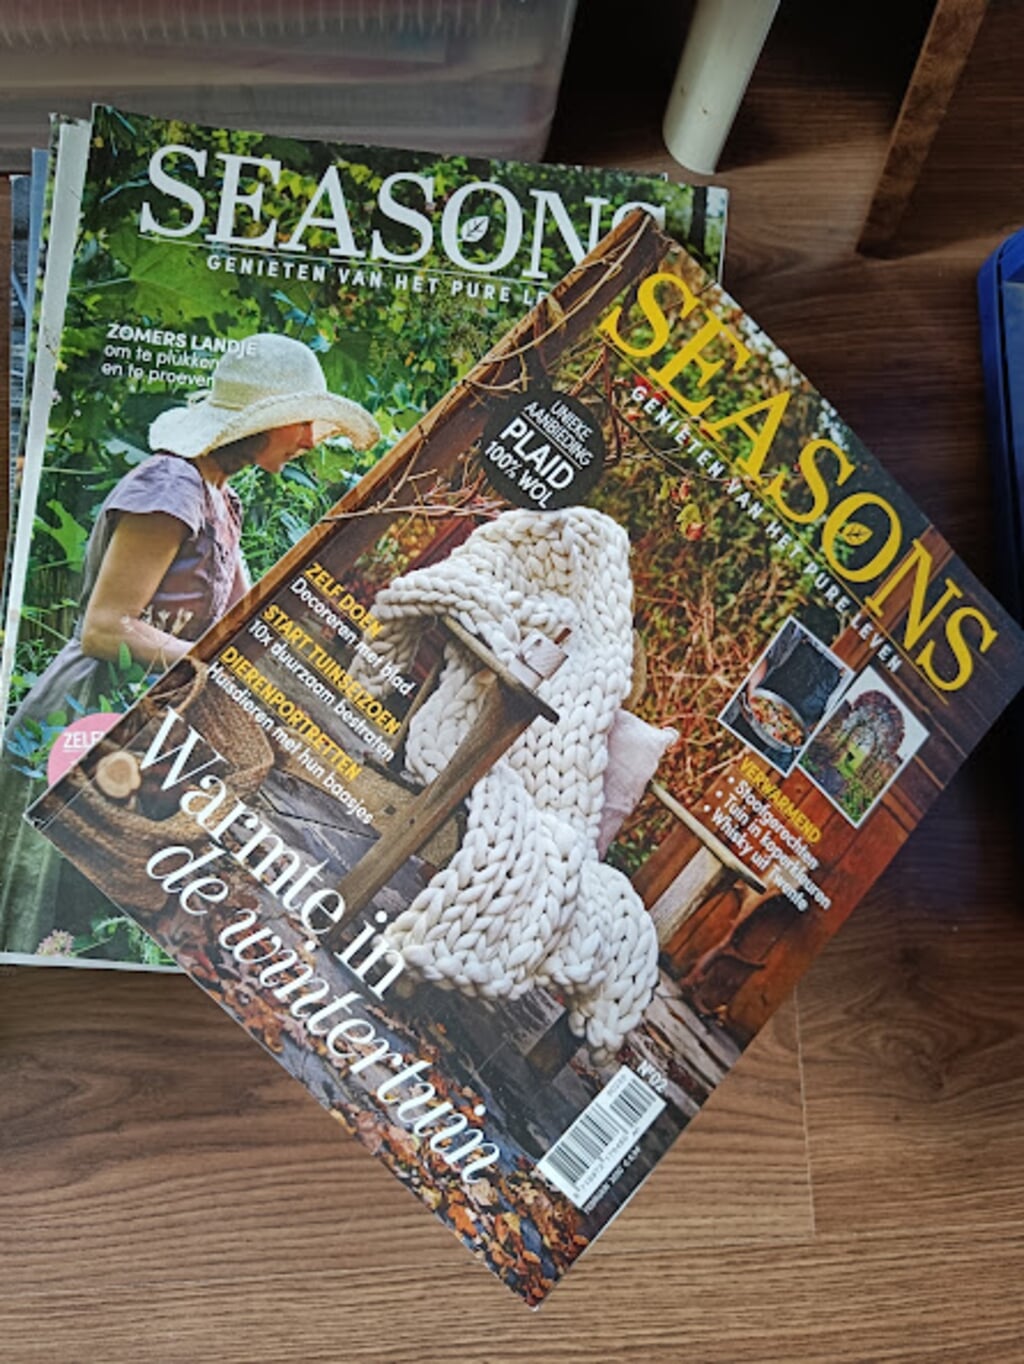 Seasons tijdschriften